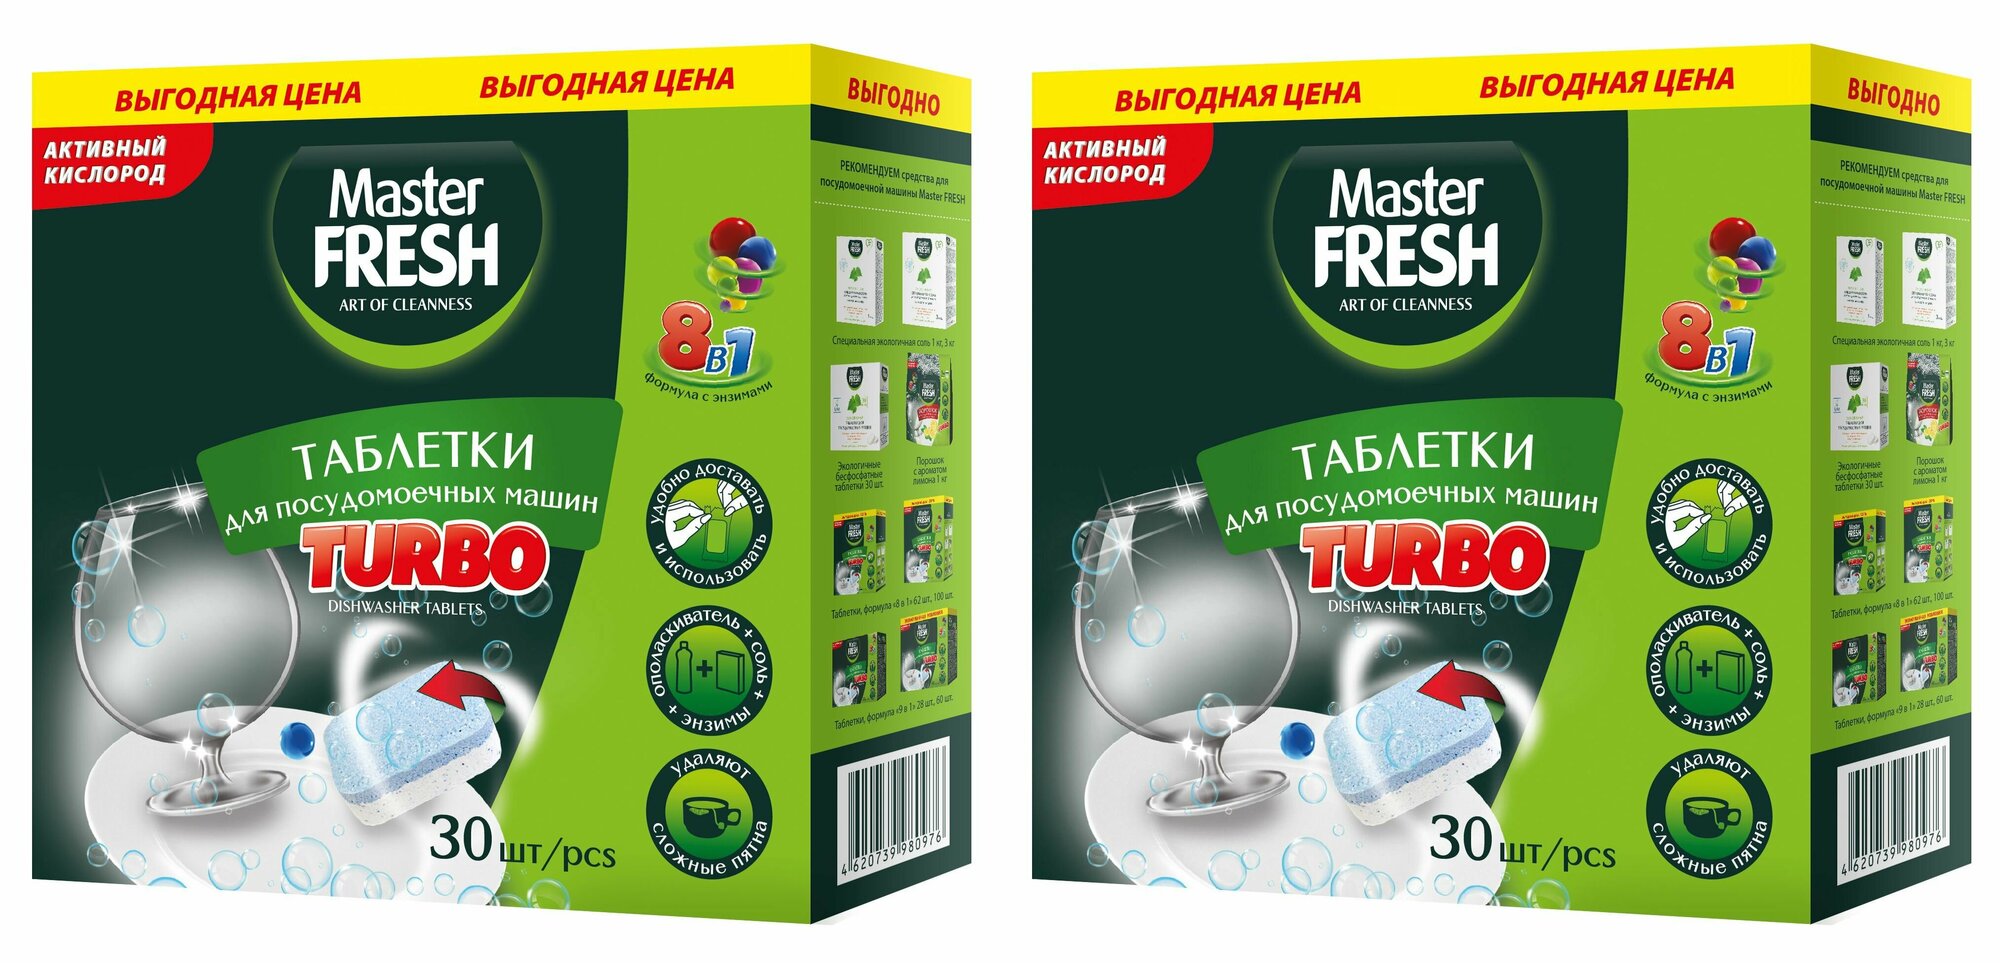 Master fresh таблетки для посудомоечных машин TURBO 8в1 в нерастворимой оболочке 30 шт 2уп.